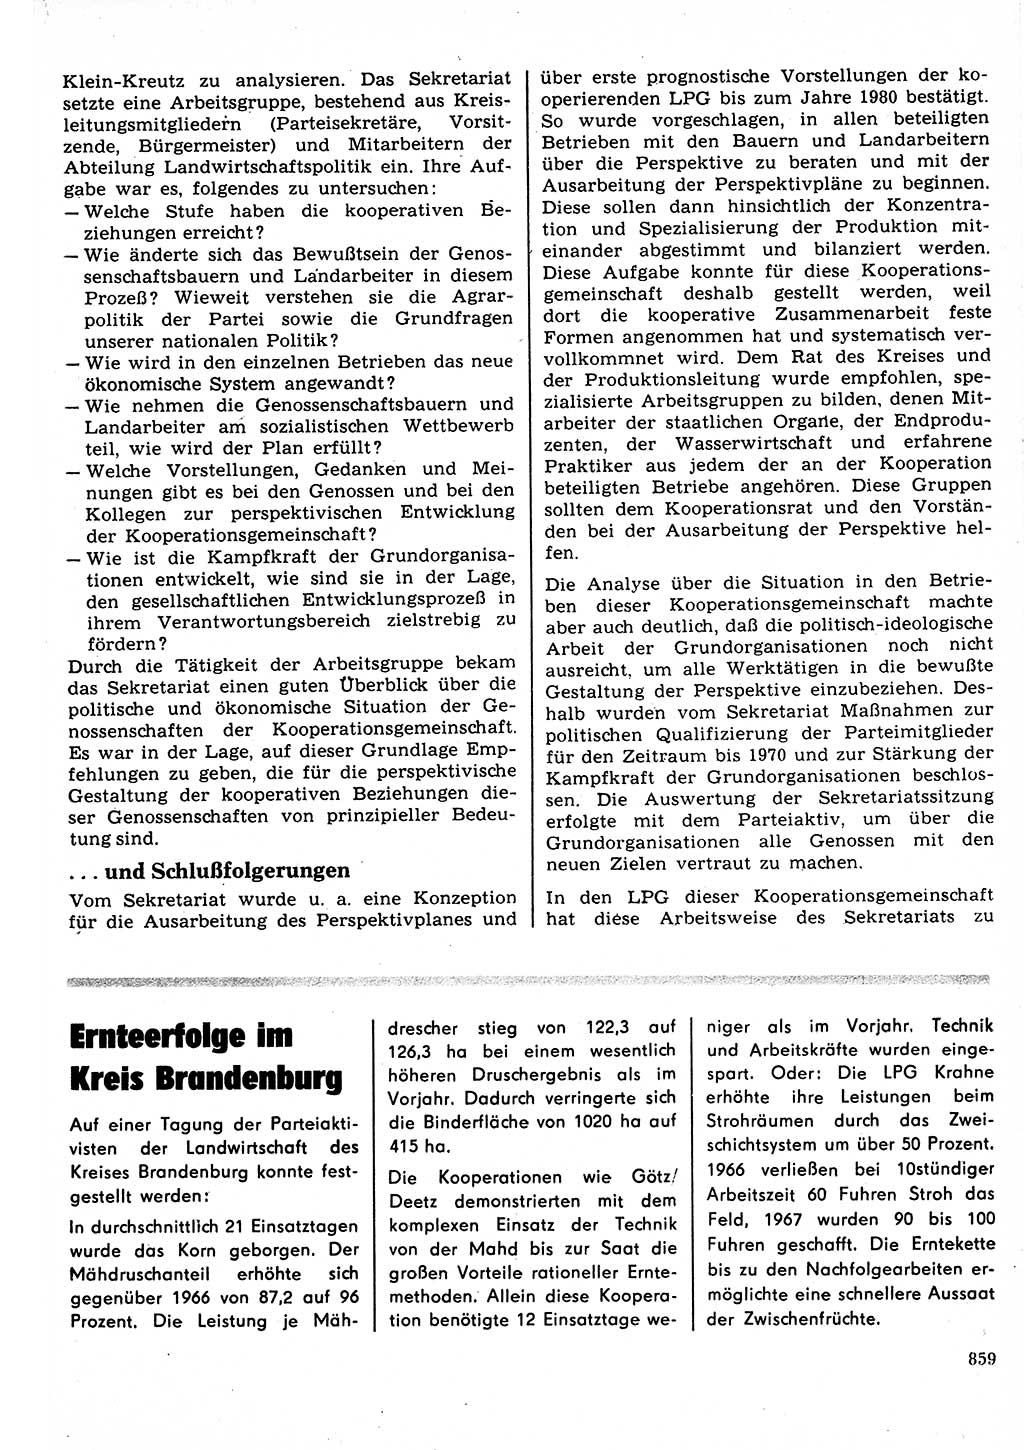 Neuer Weg (NW), Organ des Zentralkomitees (ZK) der SED (Sozialistische Einheitspartei Deutschlands) für Fragen des Parteilebens, 22. Jahrgang [Deutsche Demokratische Republik (DDR)] 1967, Seite 859 (NW ZK SED DDR 1967, S. 859)